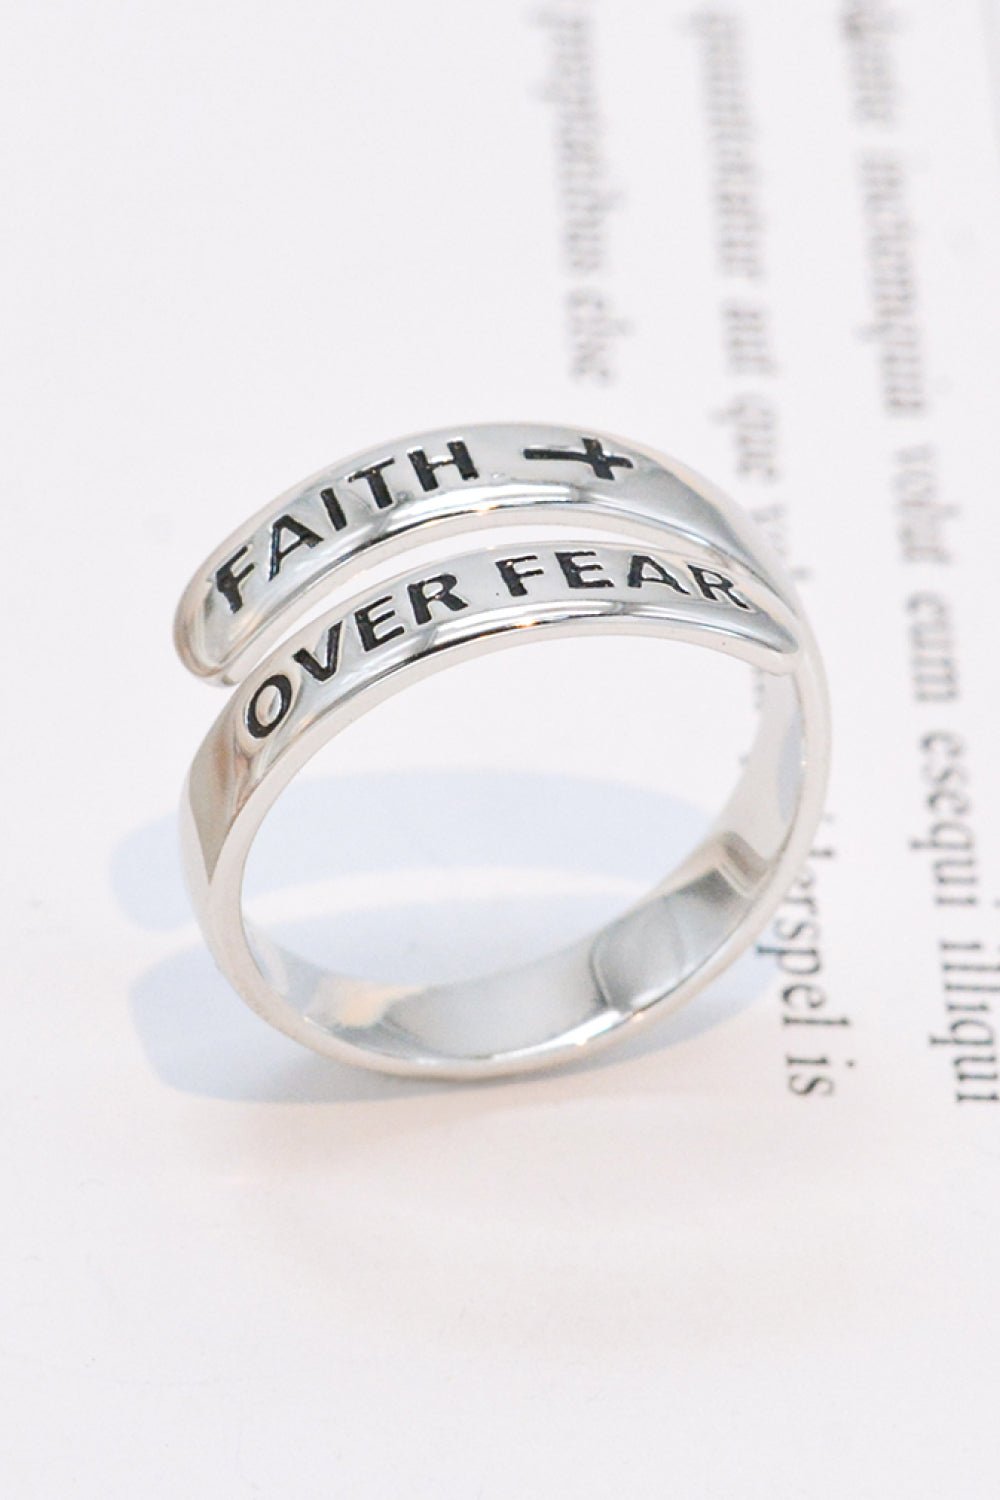 FAITH OVER FEAR Ring - Tangerine Goddess